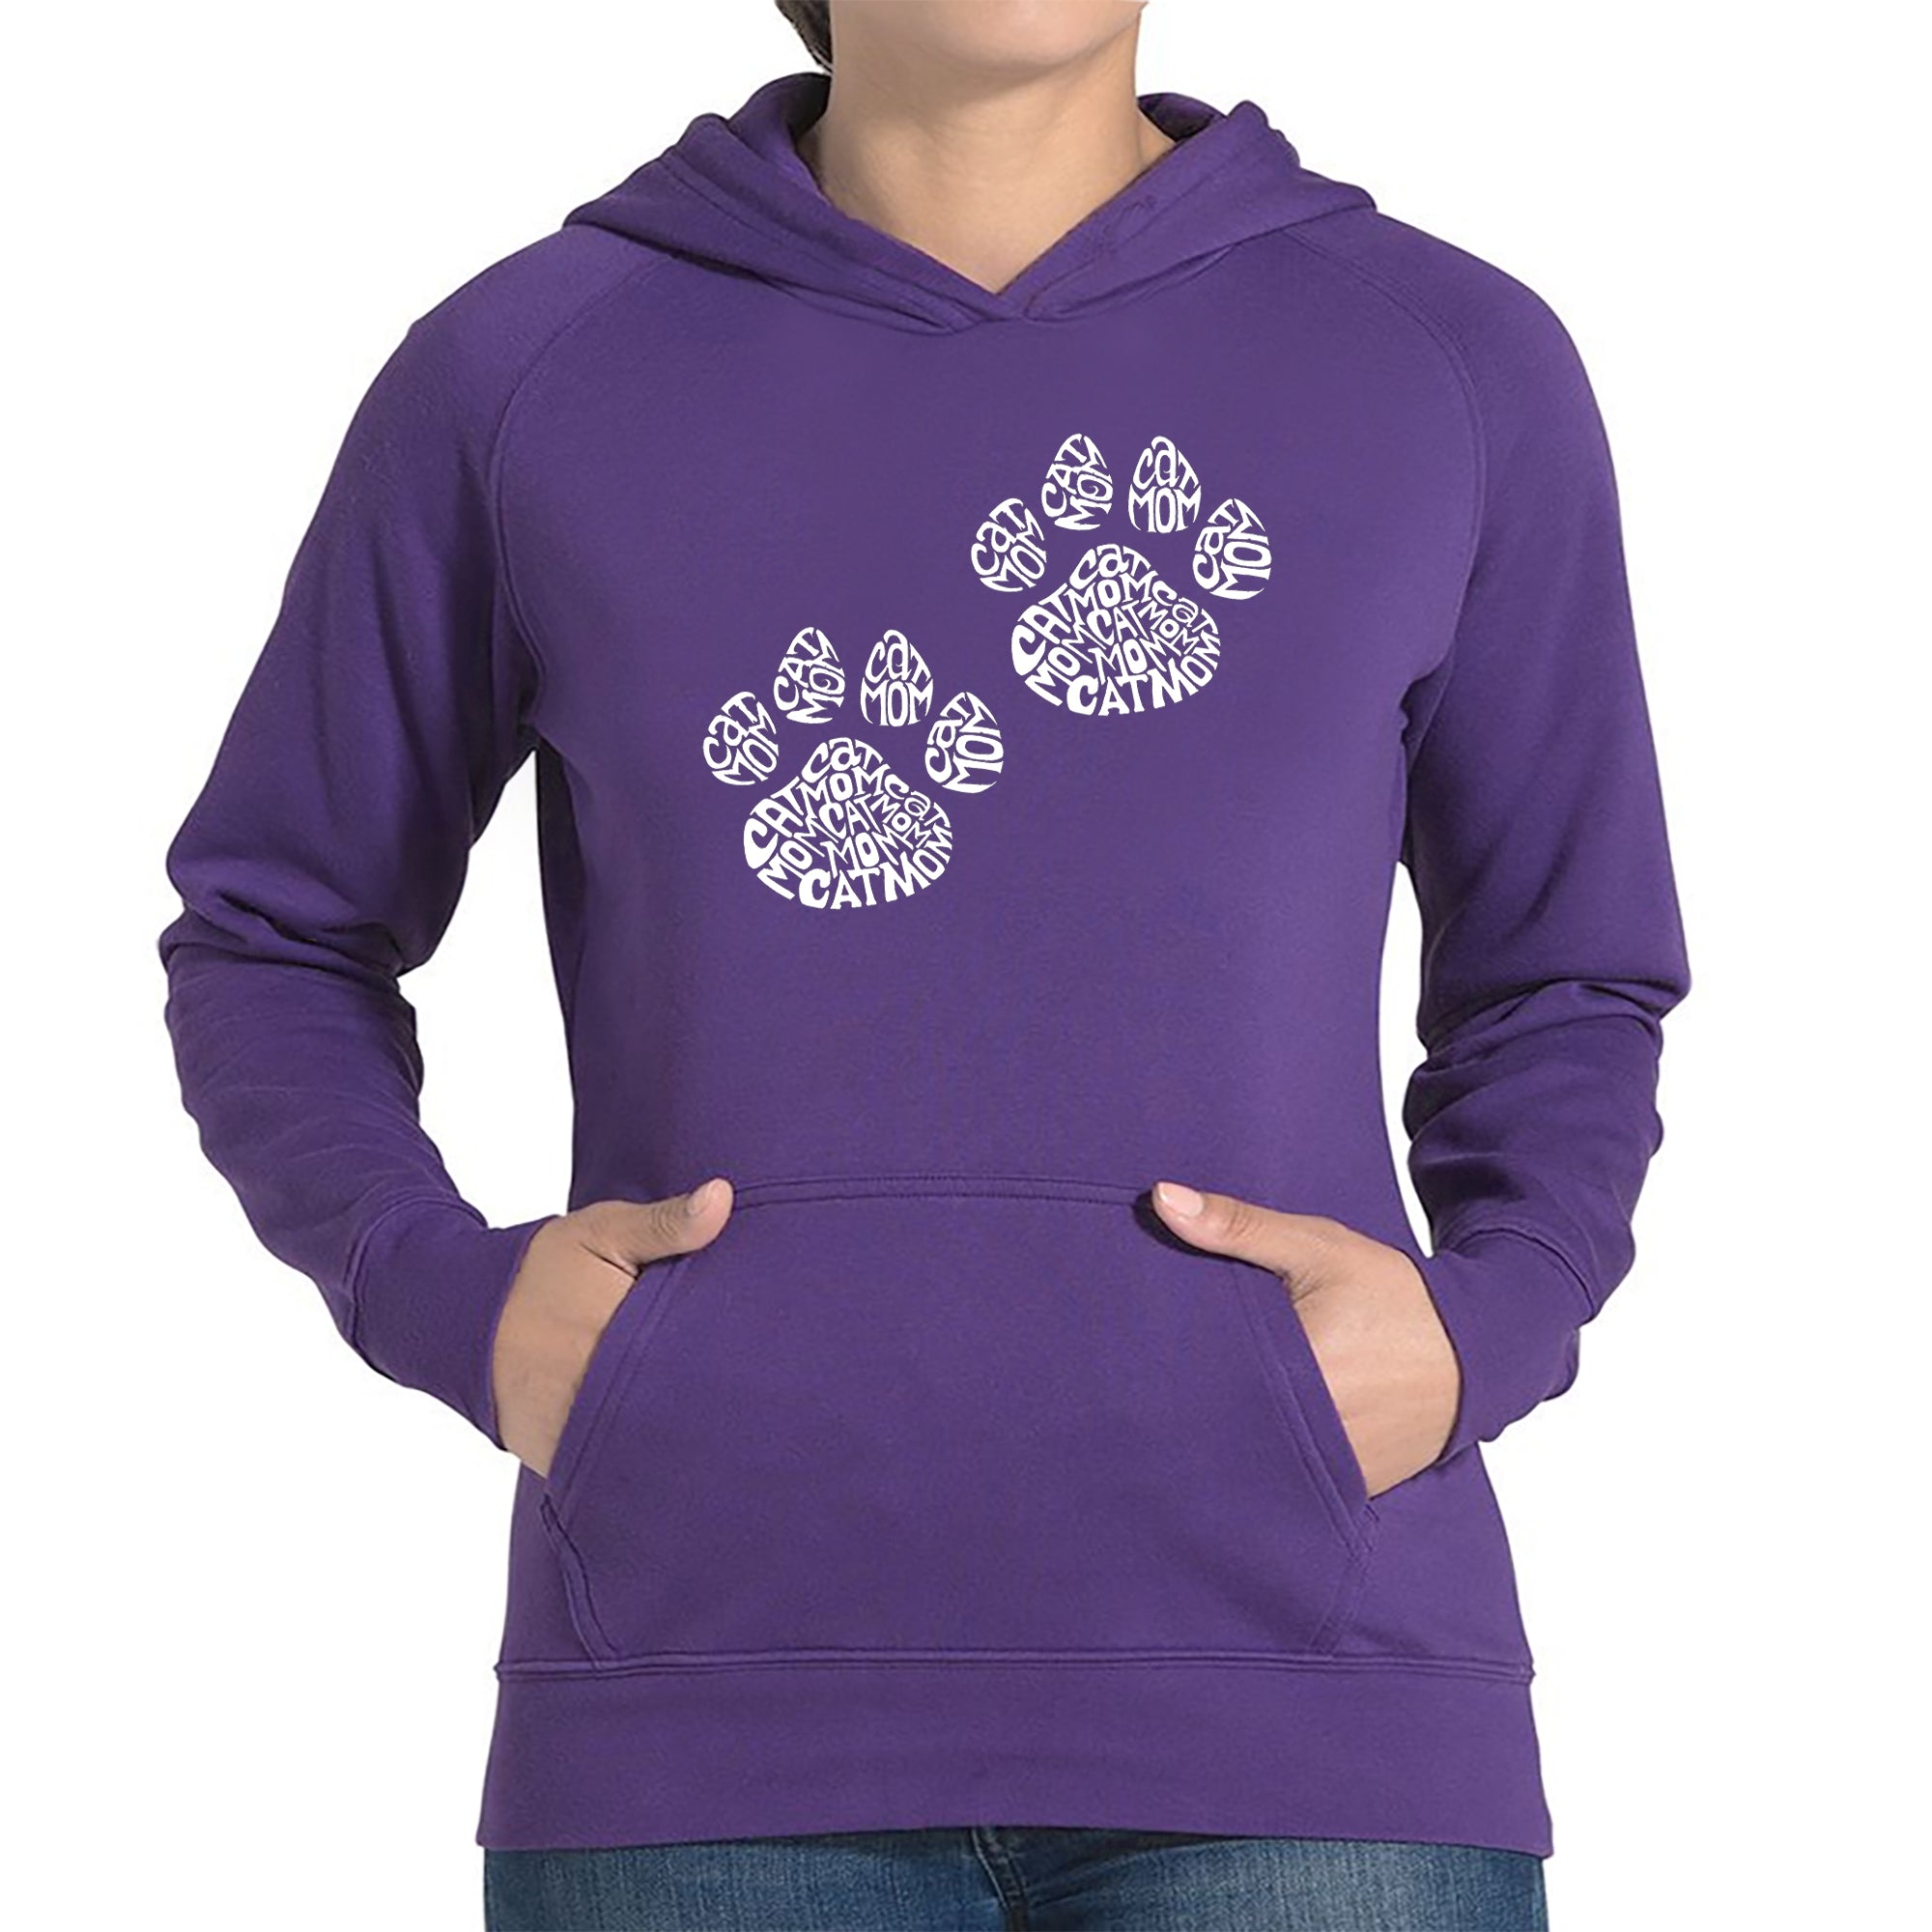 Cat Mom - Women's Word Art Hooded Sweatshirt - Purple - XXX-Large